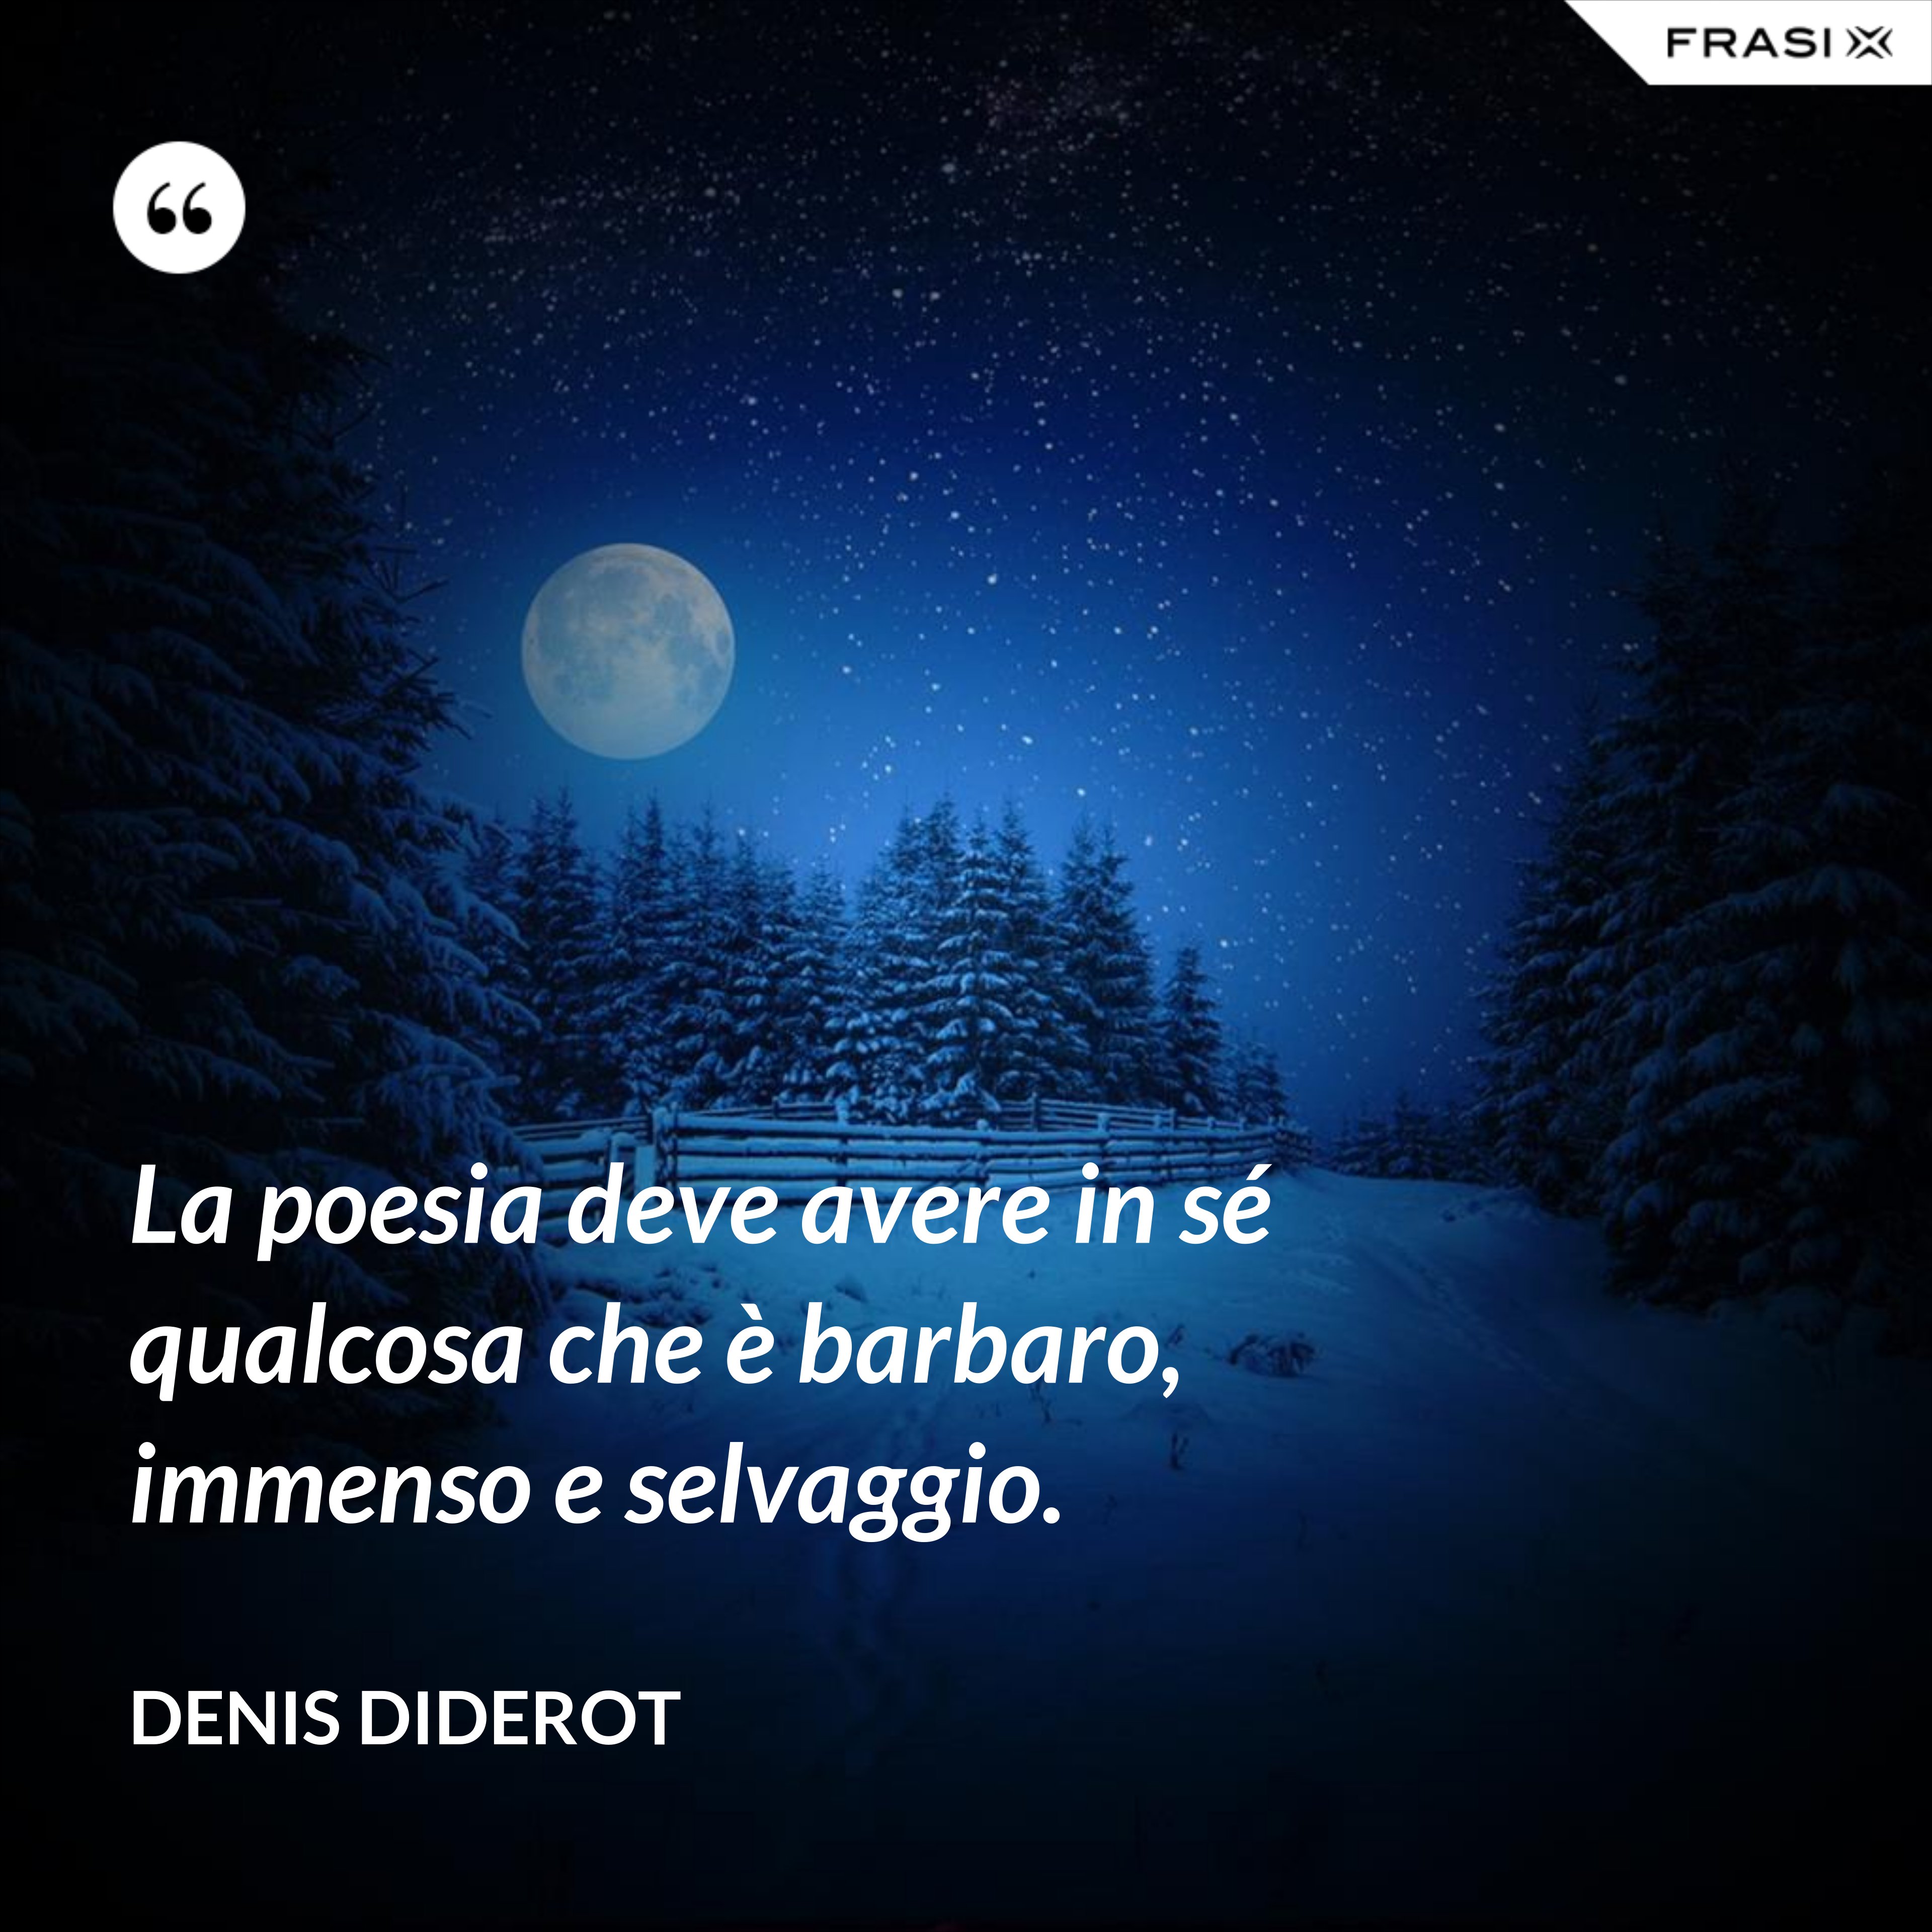 La poesia deve avere in sé qualcosa che è barbaro, immenso e selvaggio. - Denis Diderot